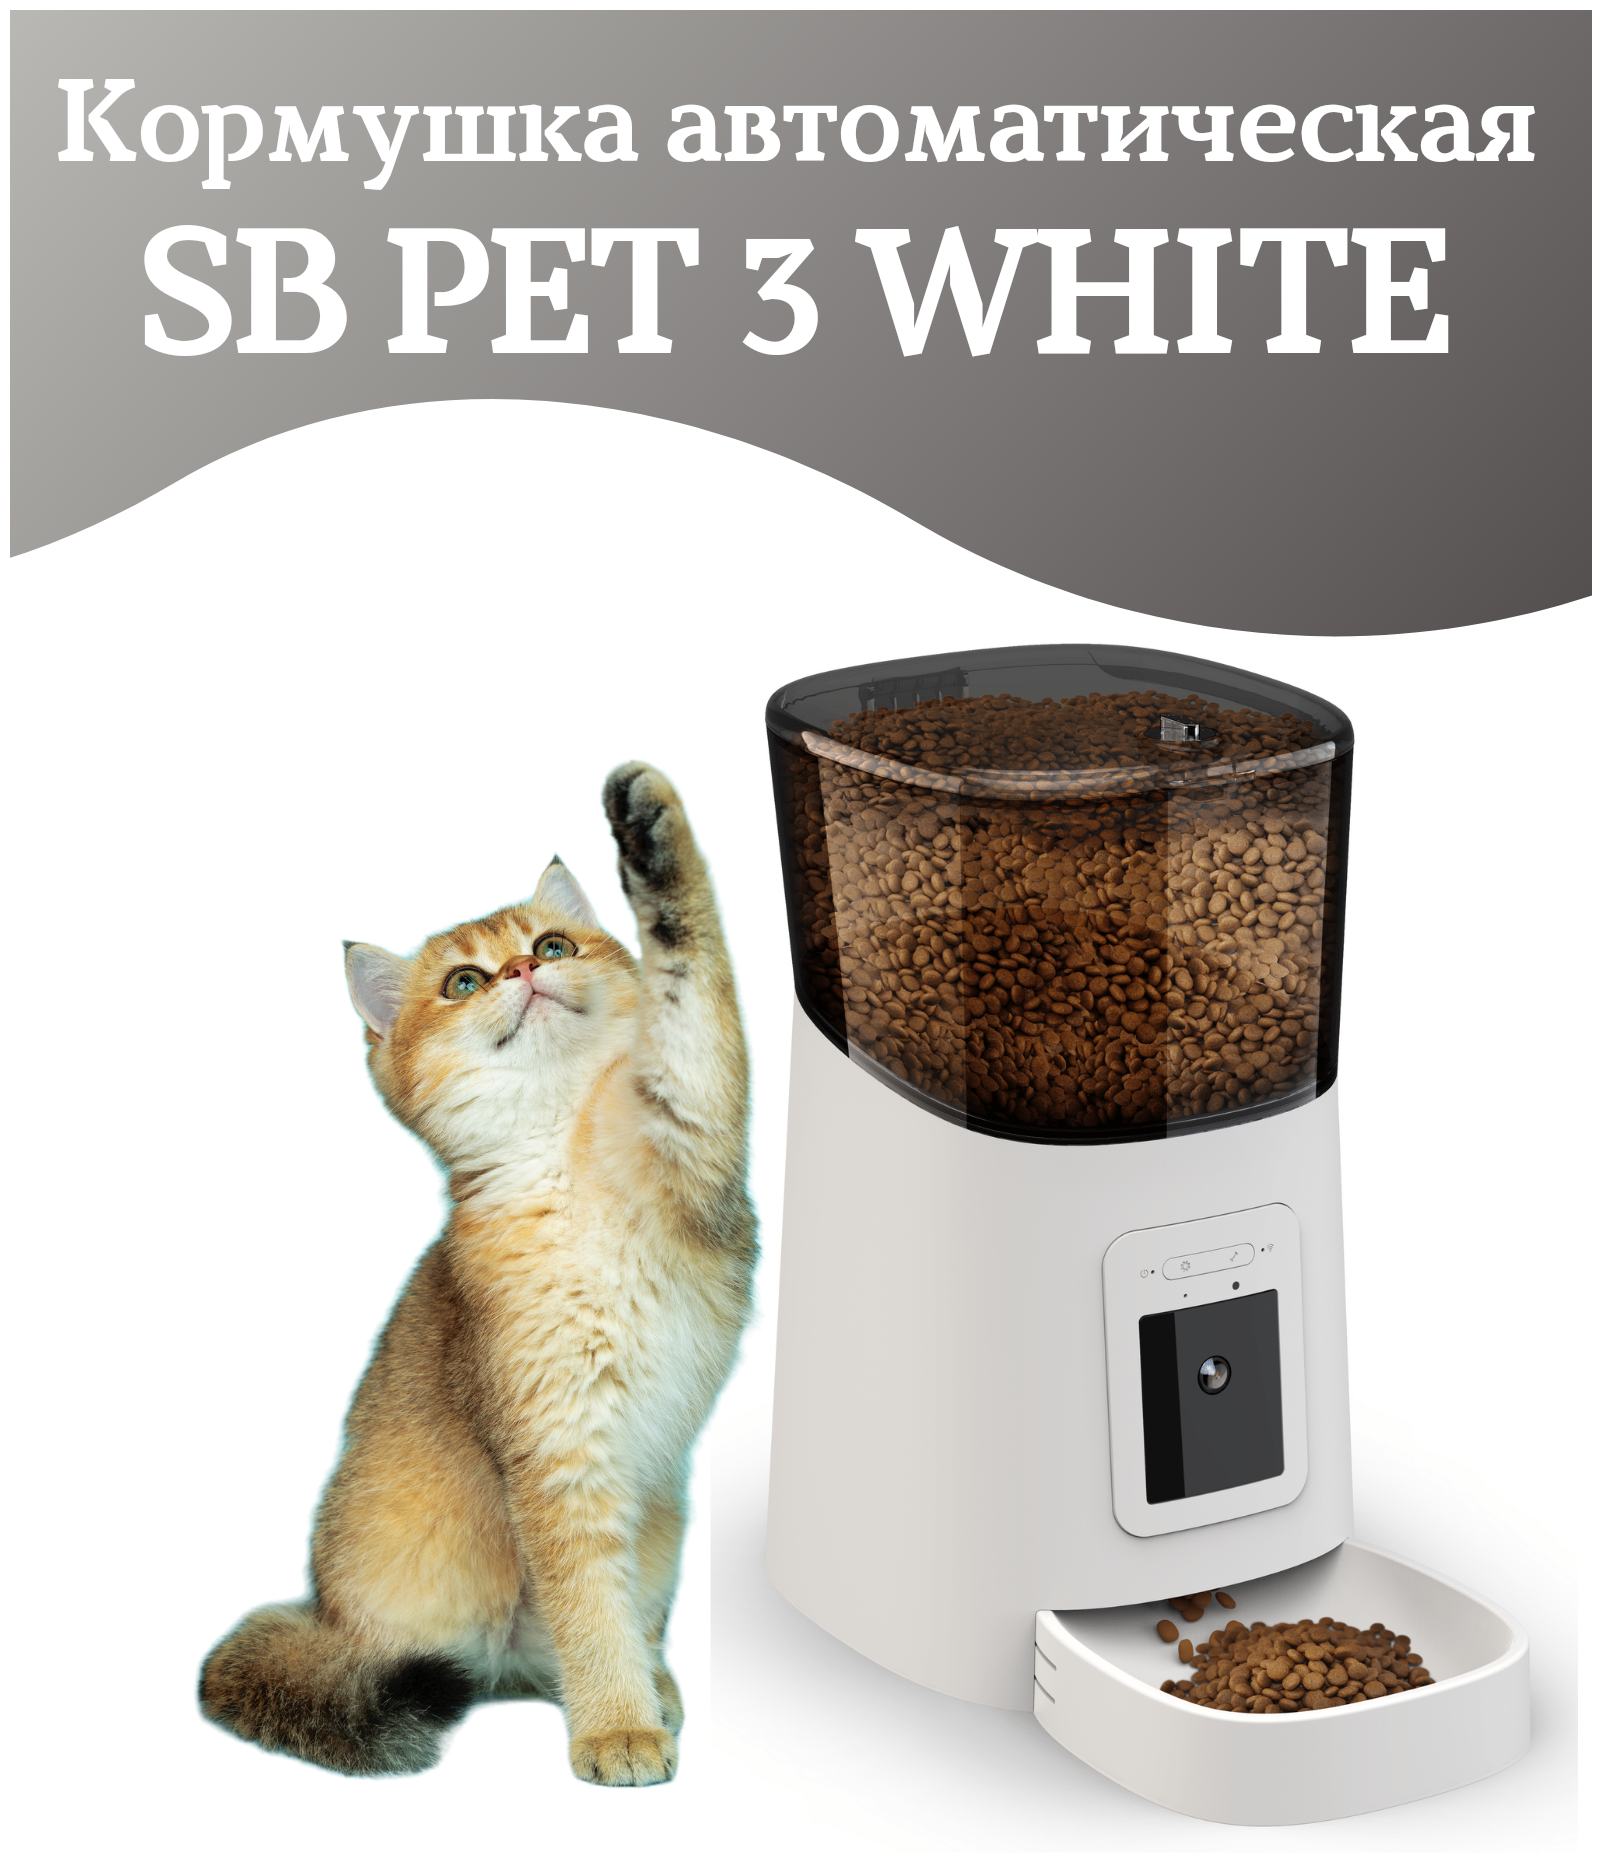 Кормушка автоматическая SB PET 3 WHITE для кошек, собак, 6л, с камерой видеонаблюдения 1080 р SAFEBURG